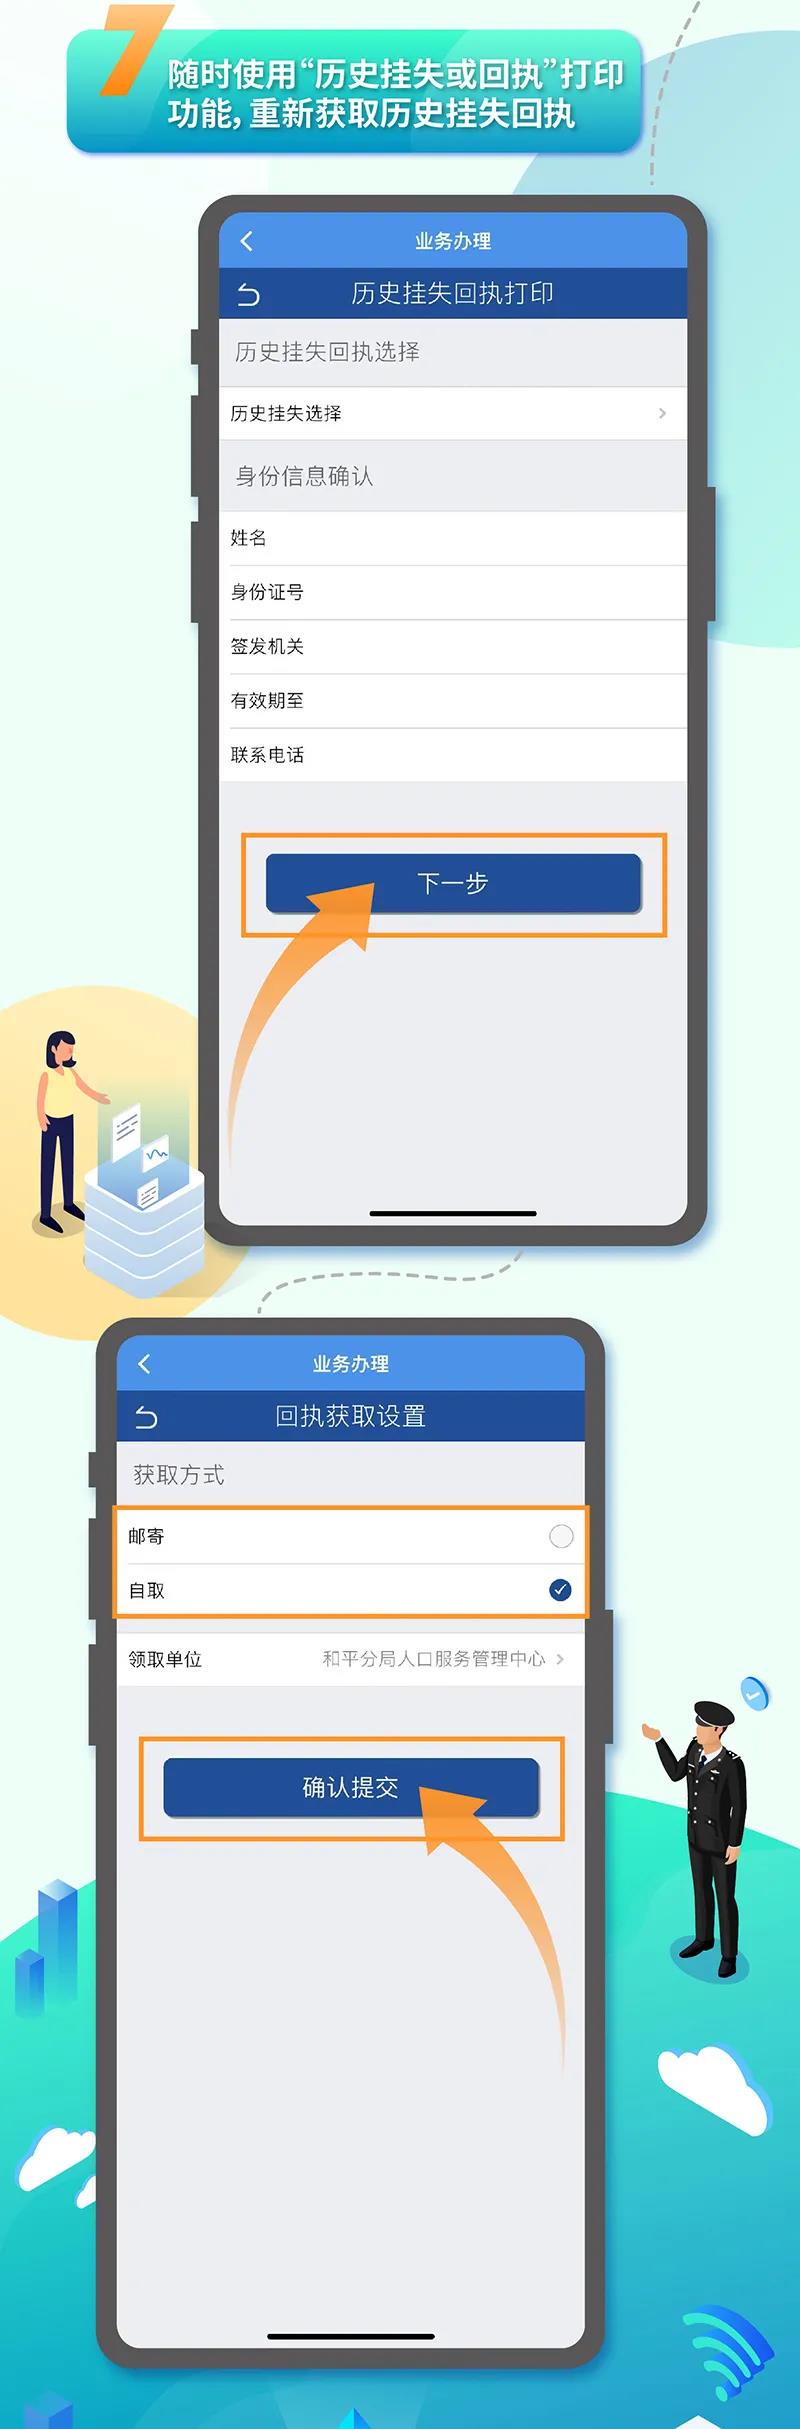 天津市居民身份证挂失网上办理办法